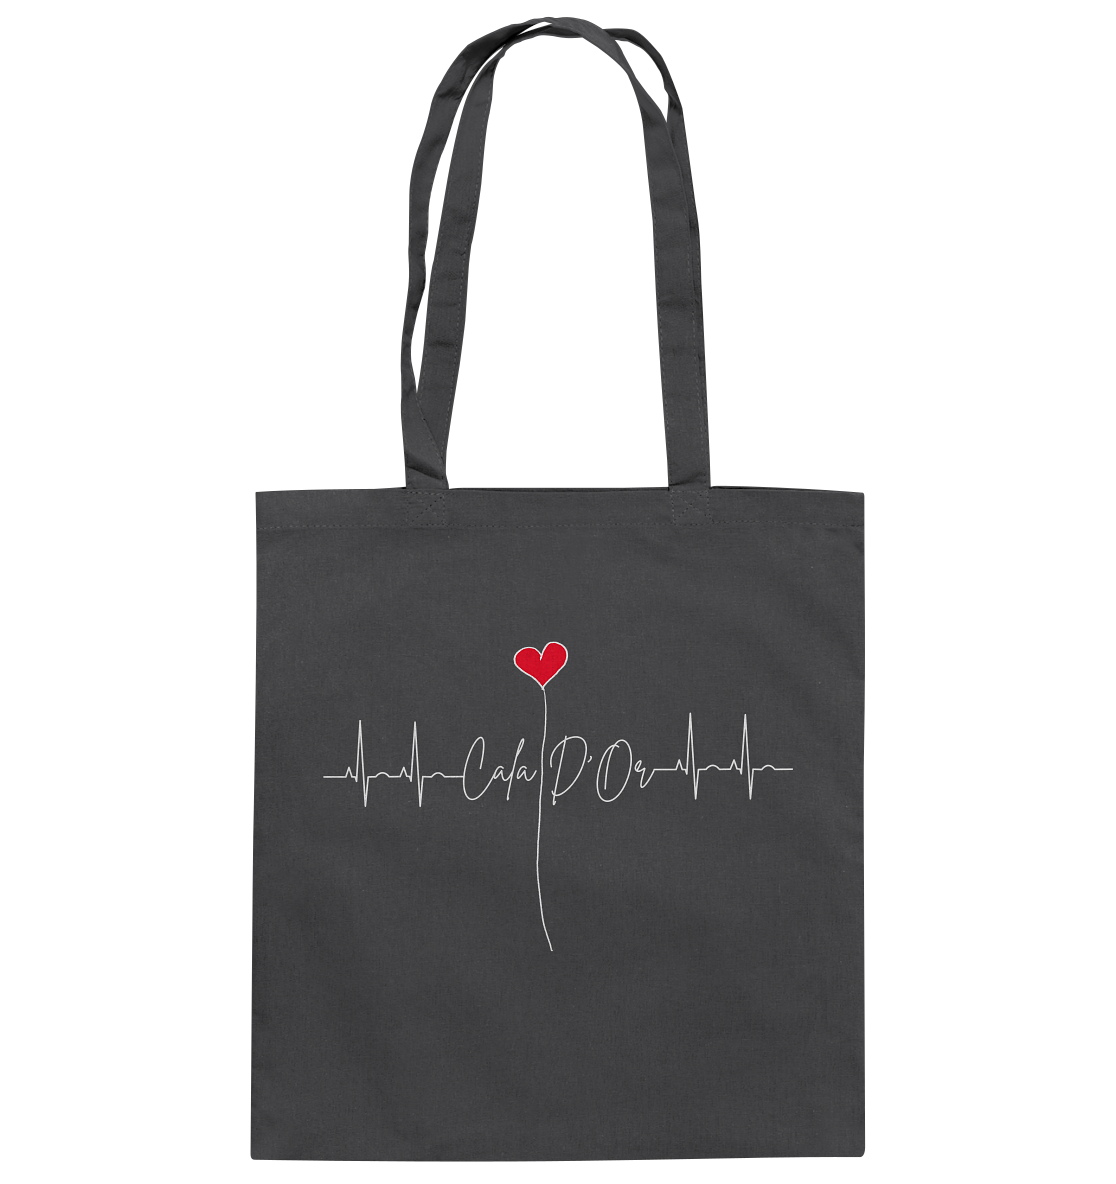 Dunkelgraue Baumwolltragetaschen mit weißer Aufschrift Cala D'Or und einem Herz